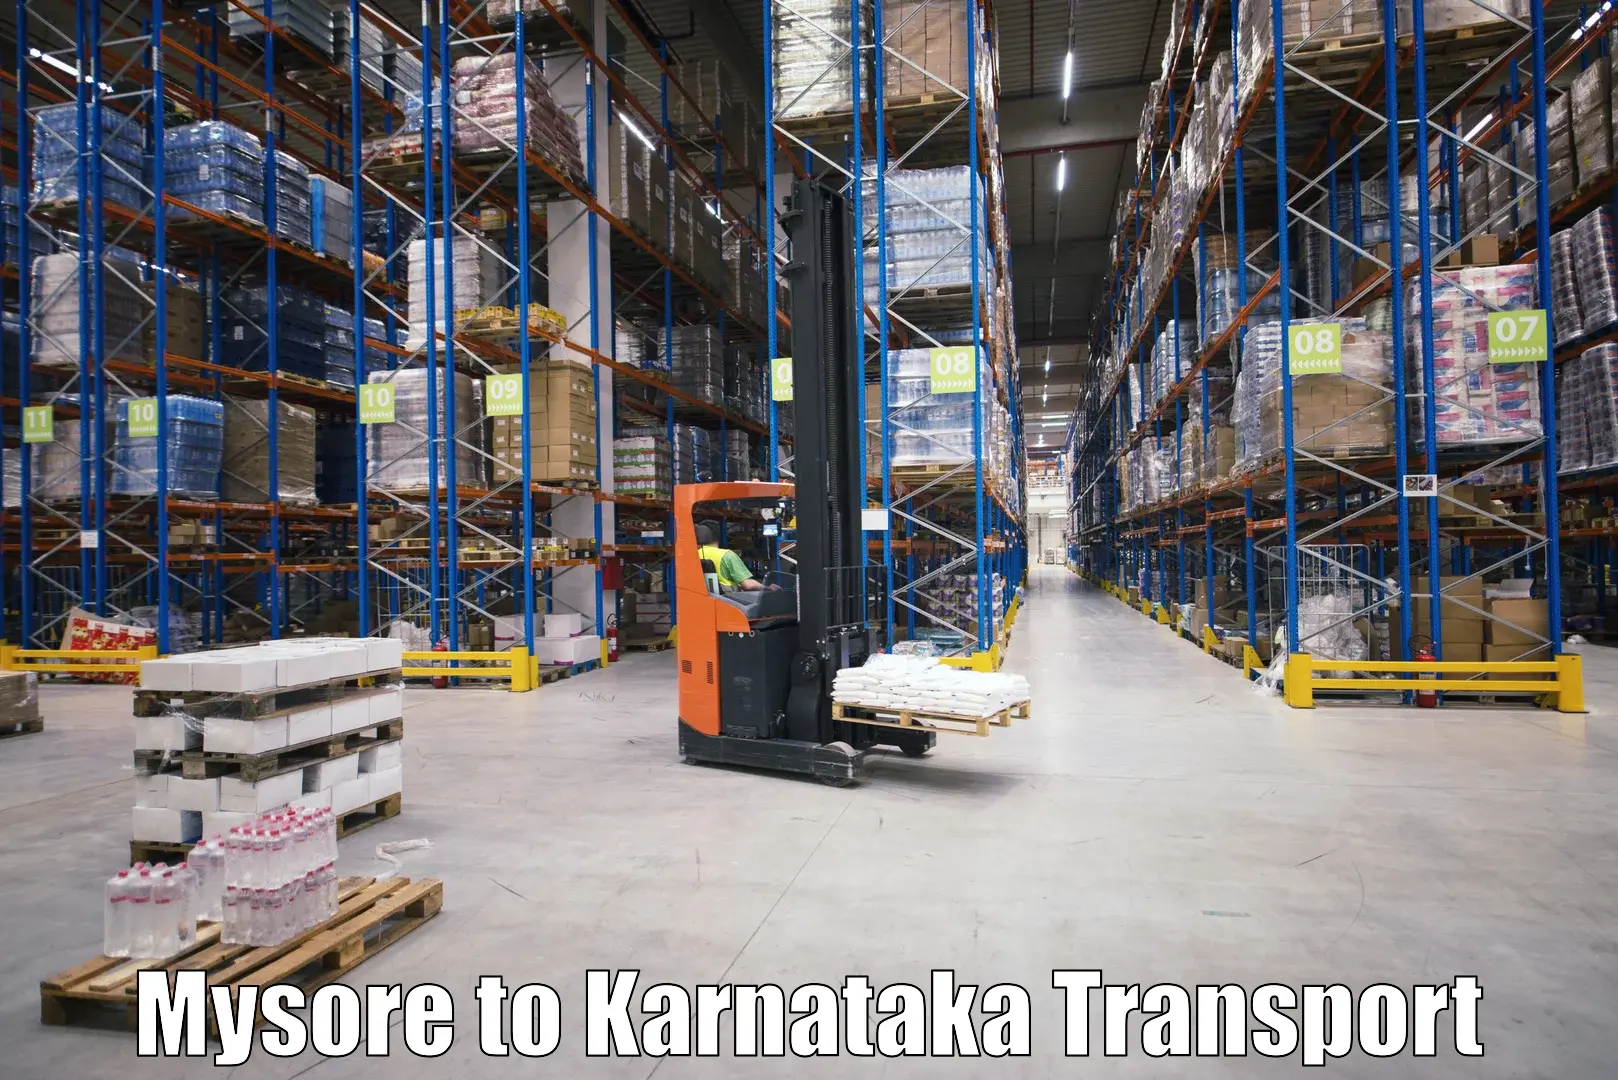 India truck logistics services Mysore to Belur